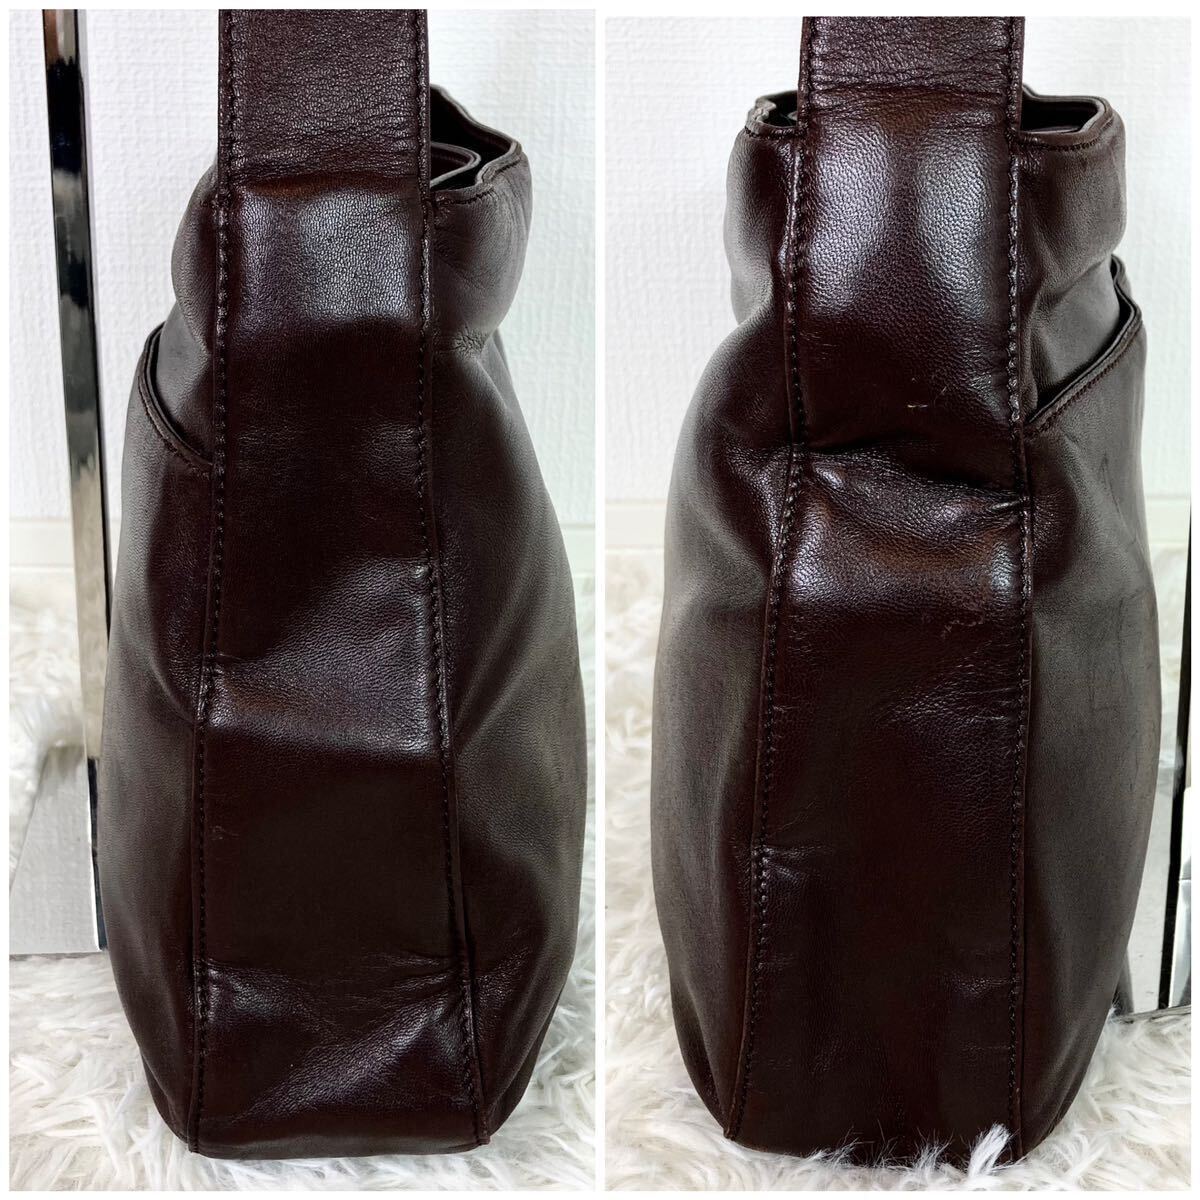 1 иен [ прекрасный товар трудно найти ] Loewe LOEWE сумка на плечо дыра грамм napa кожа мужской портфель большая вместимость плечо ..* чёрный натуральная кожа 